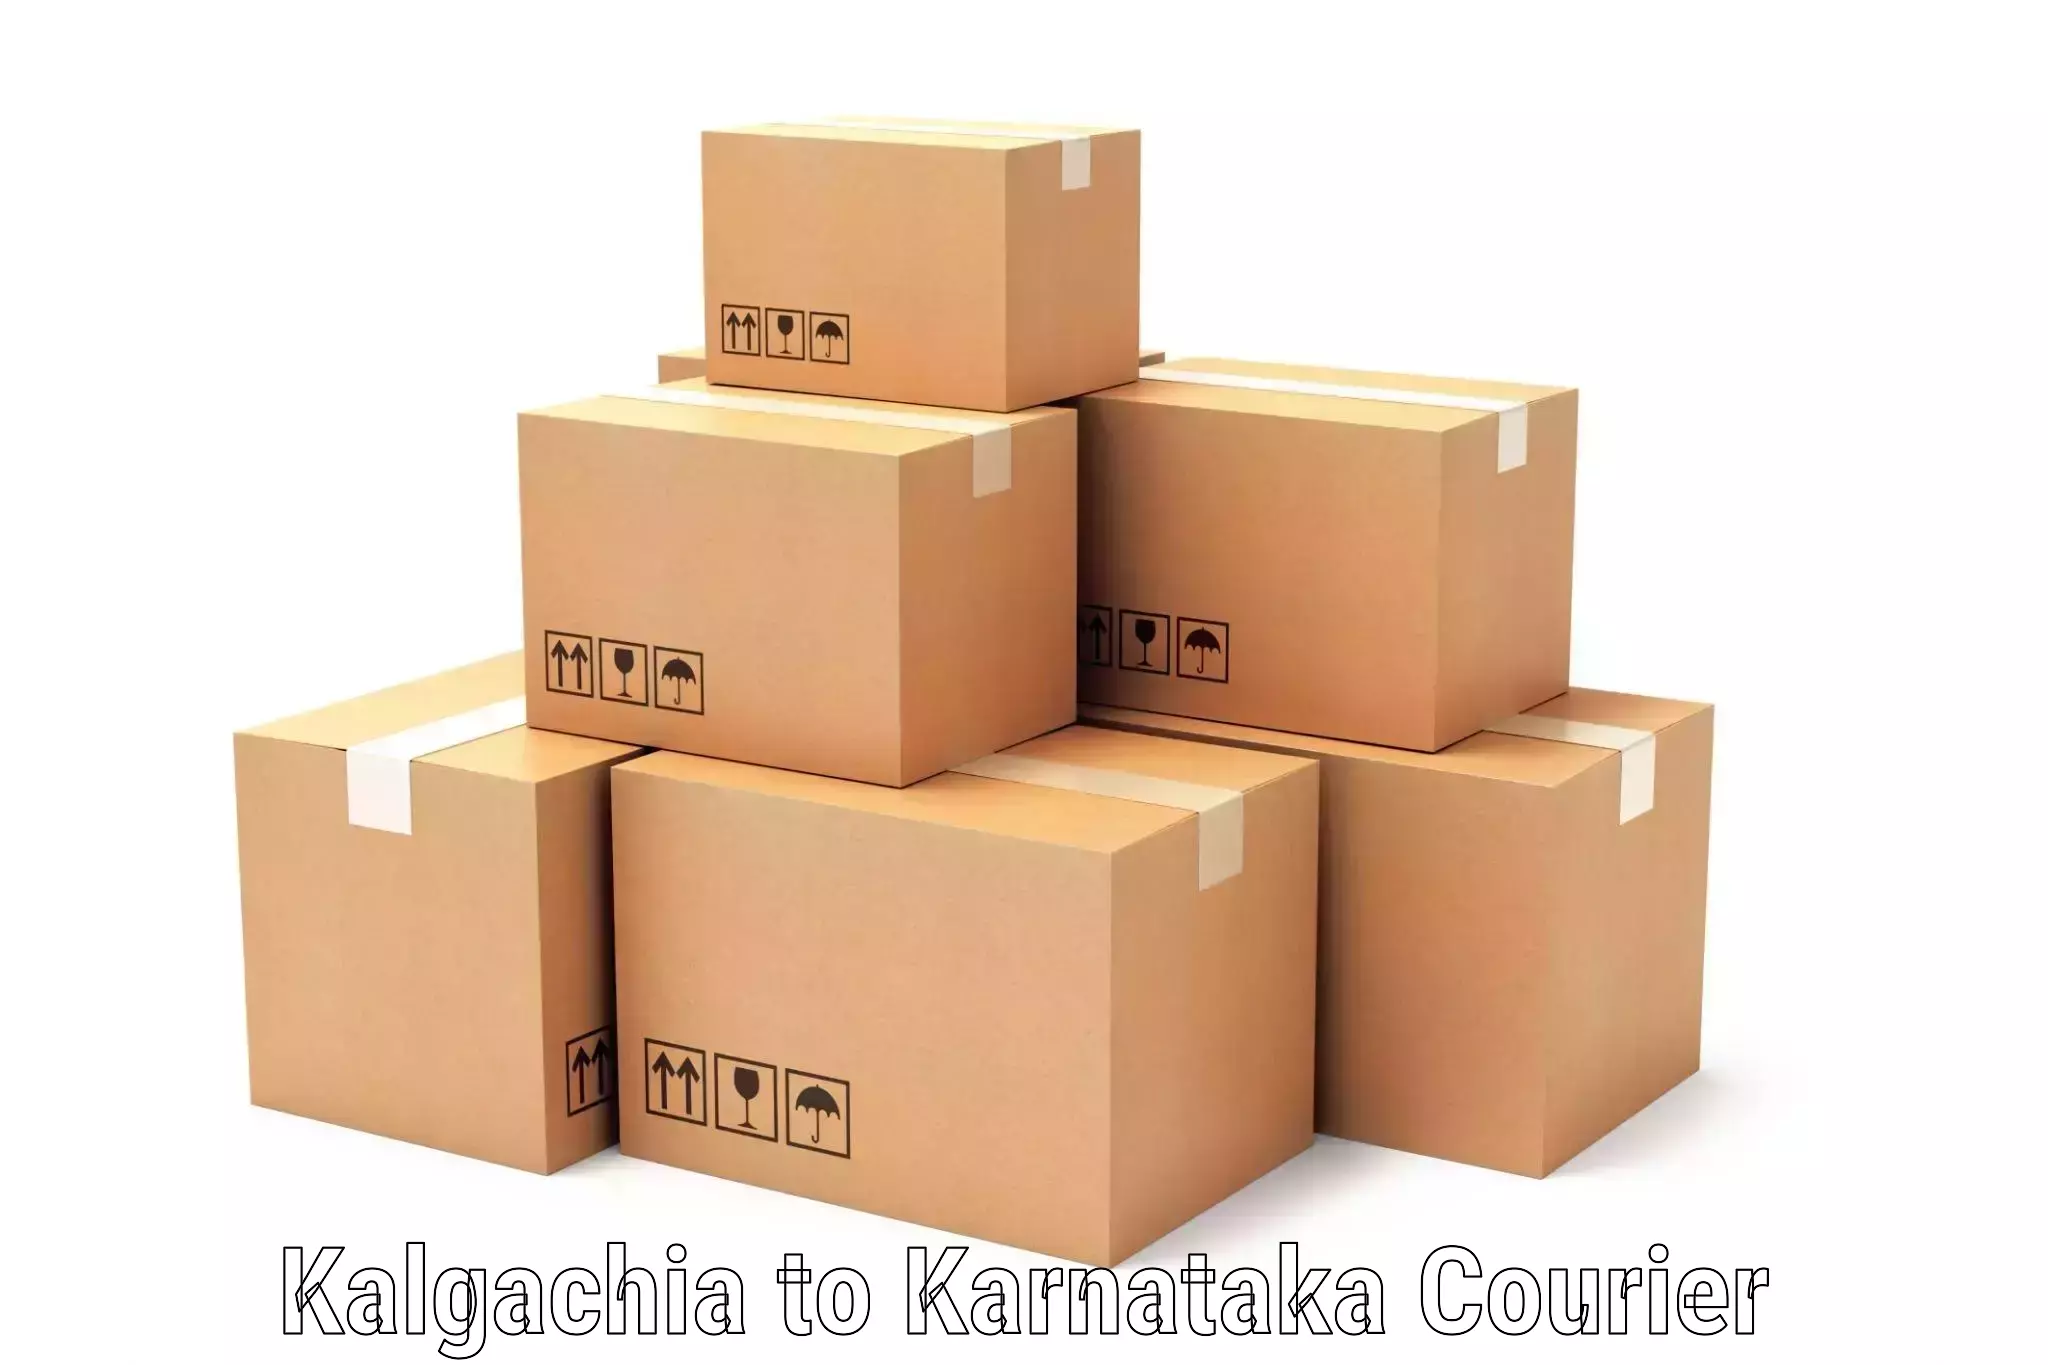 Next-day delivery options Kalgachia to Raibag